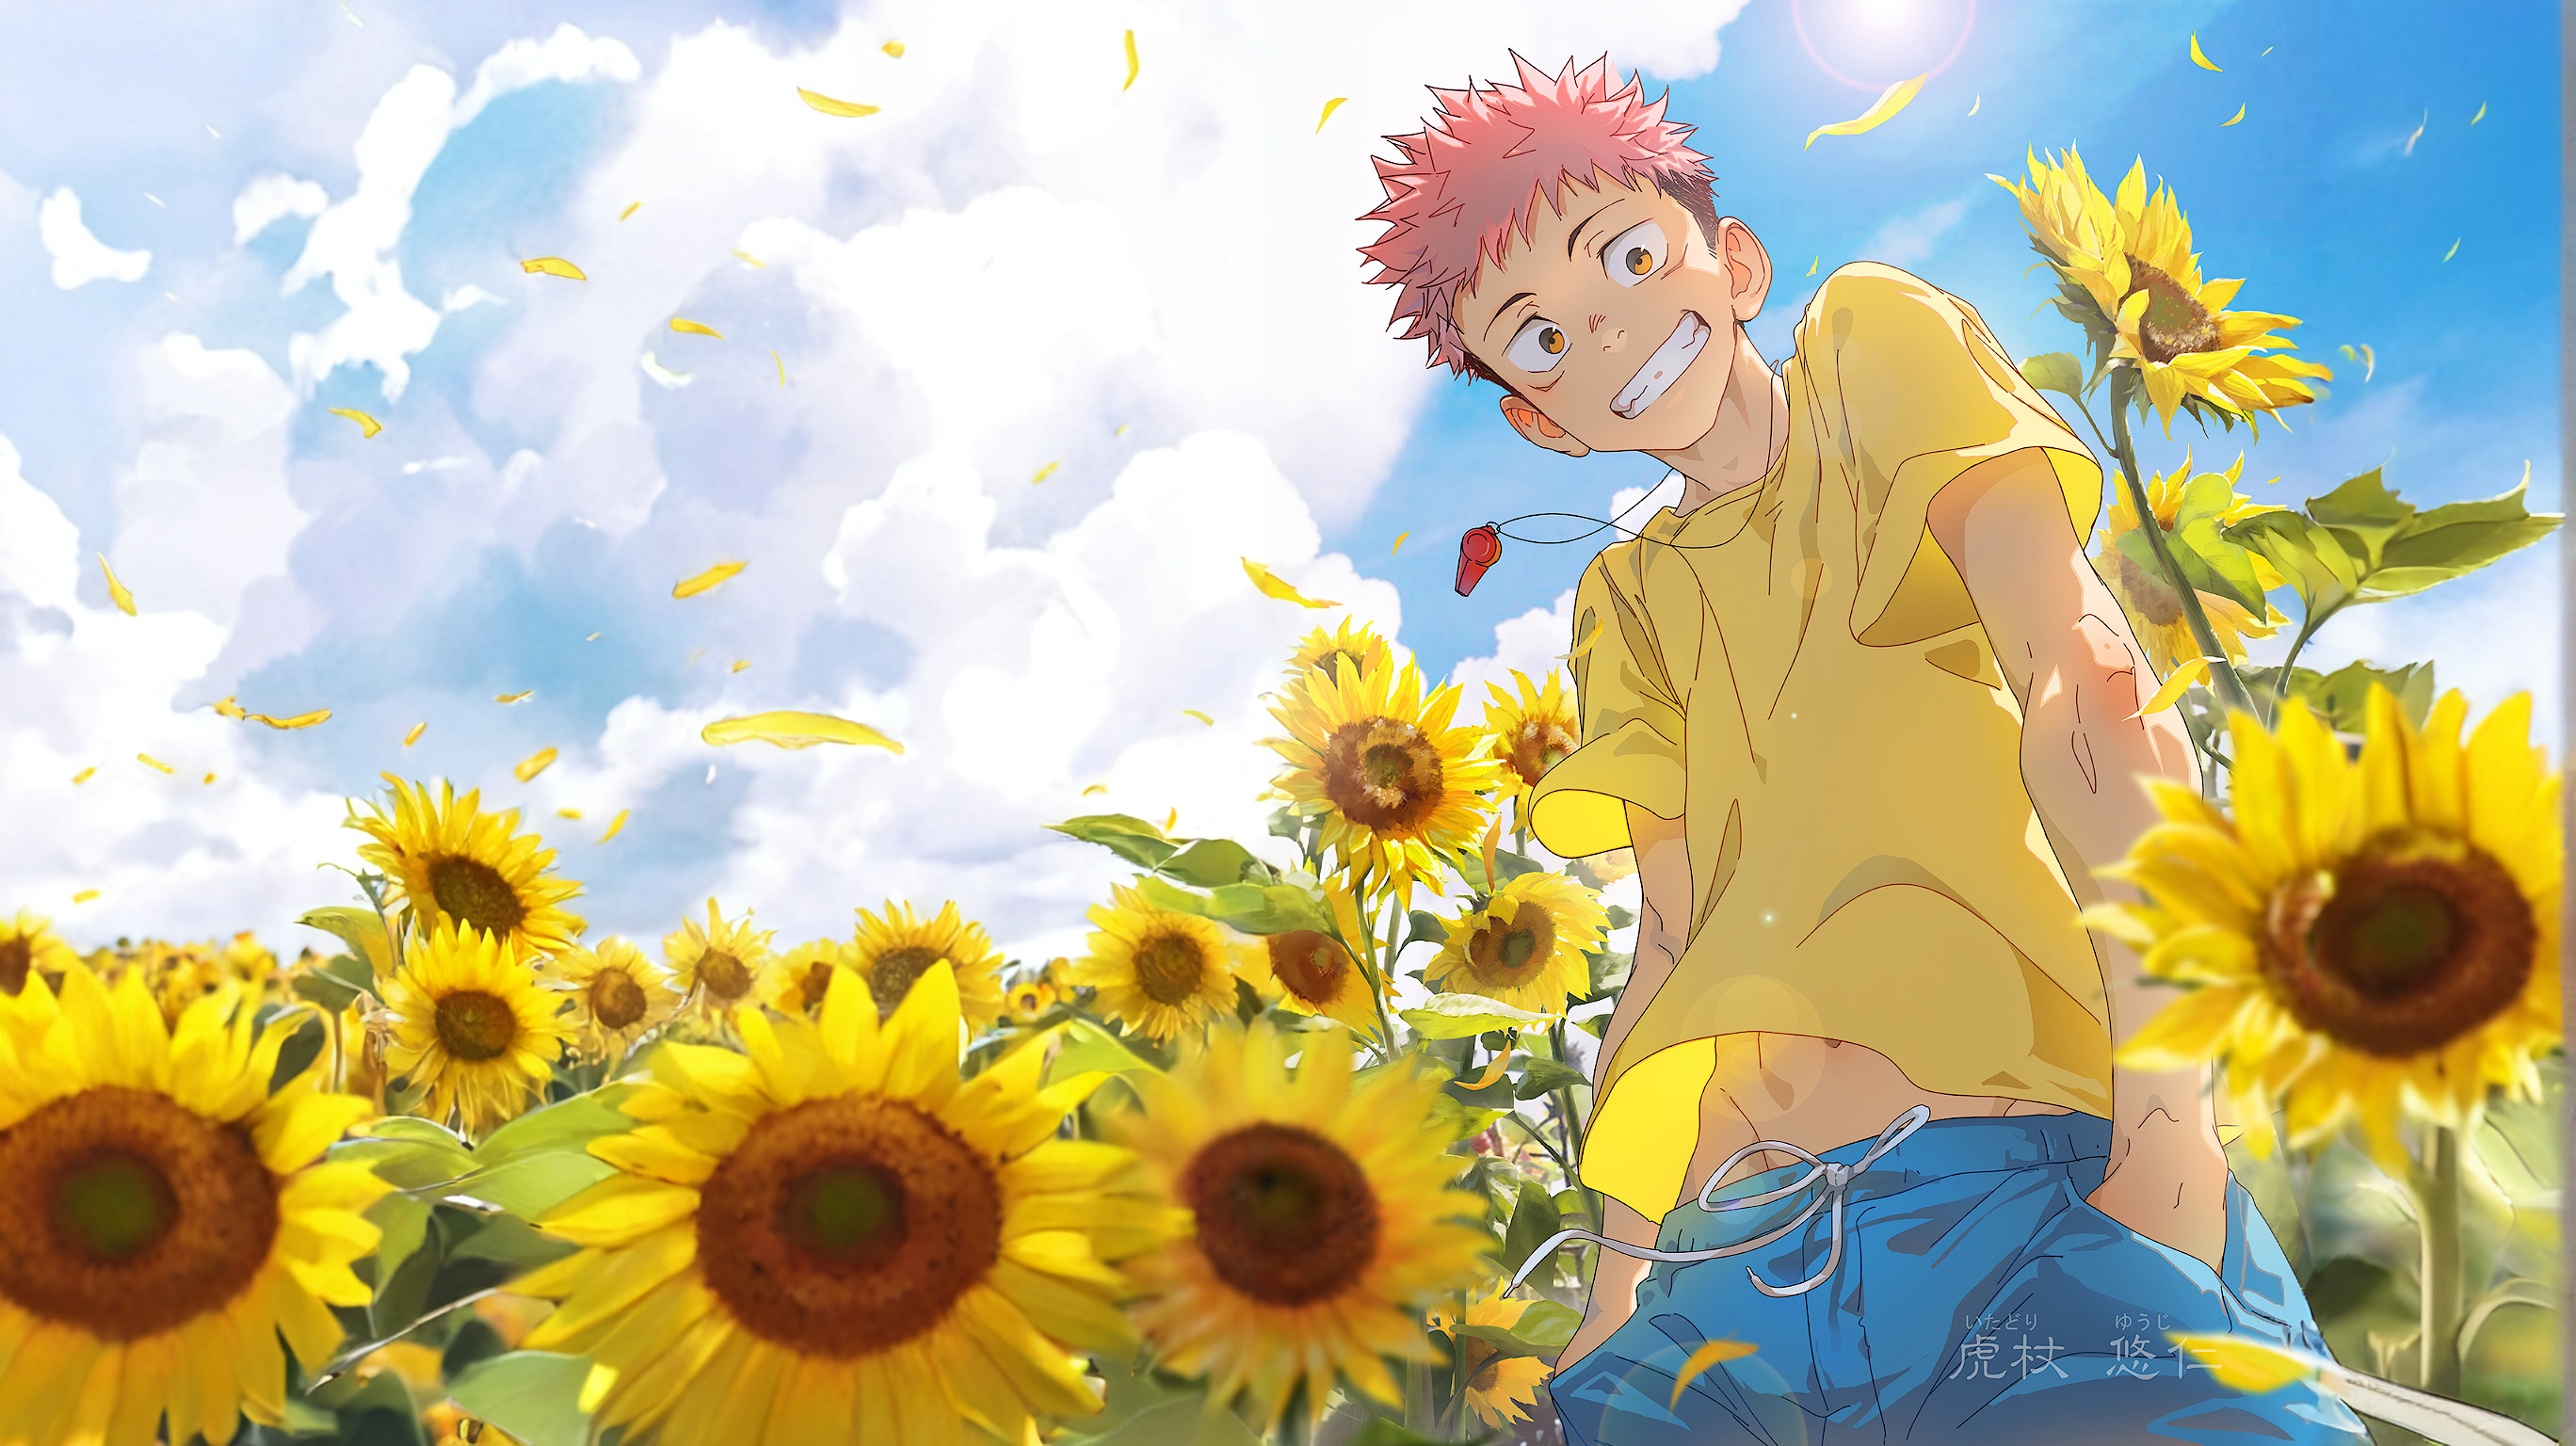 Anime 2736x1536 Jujutsu Kaisen Yuji Itadori yellow shirt sunflowers sky blue Beitemian anime boys